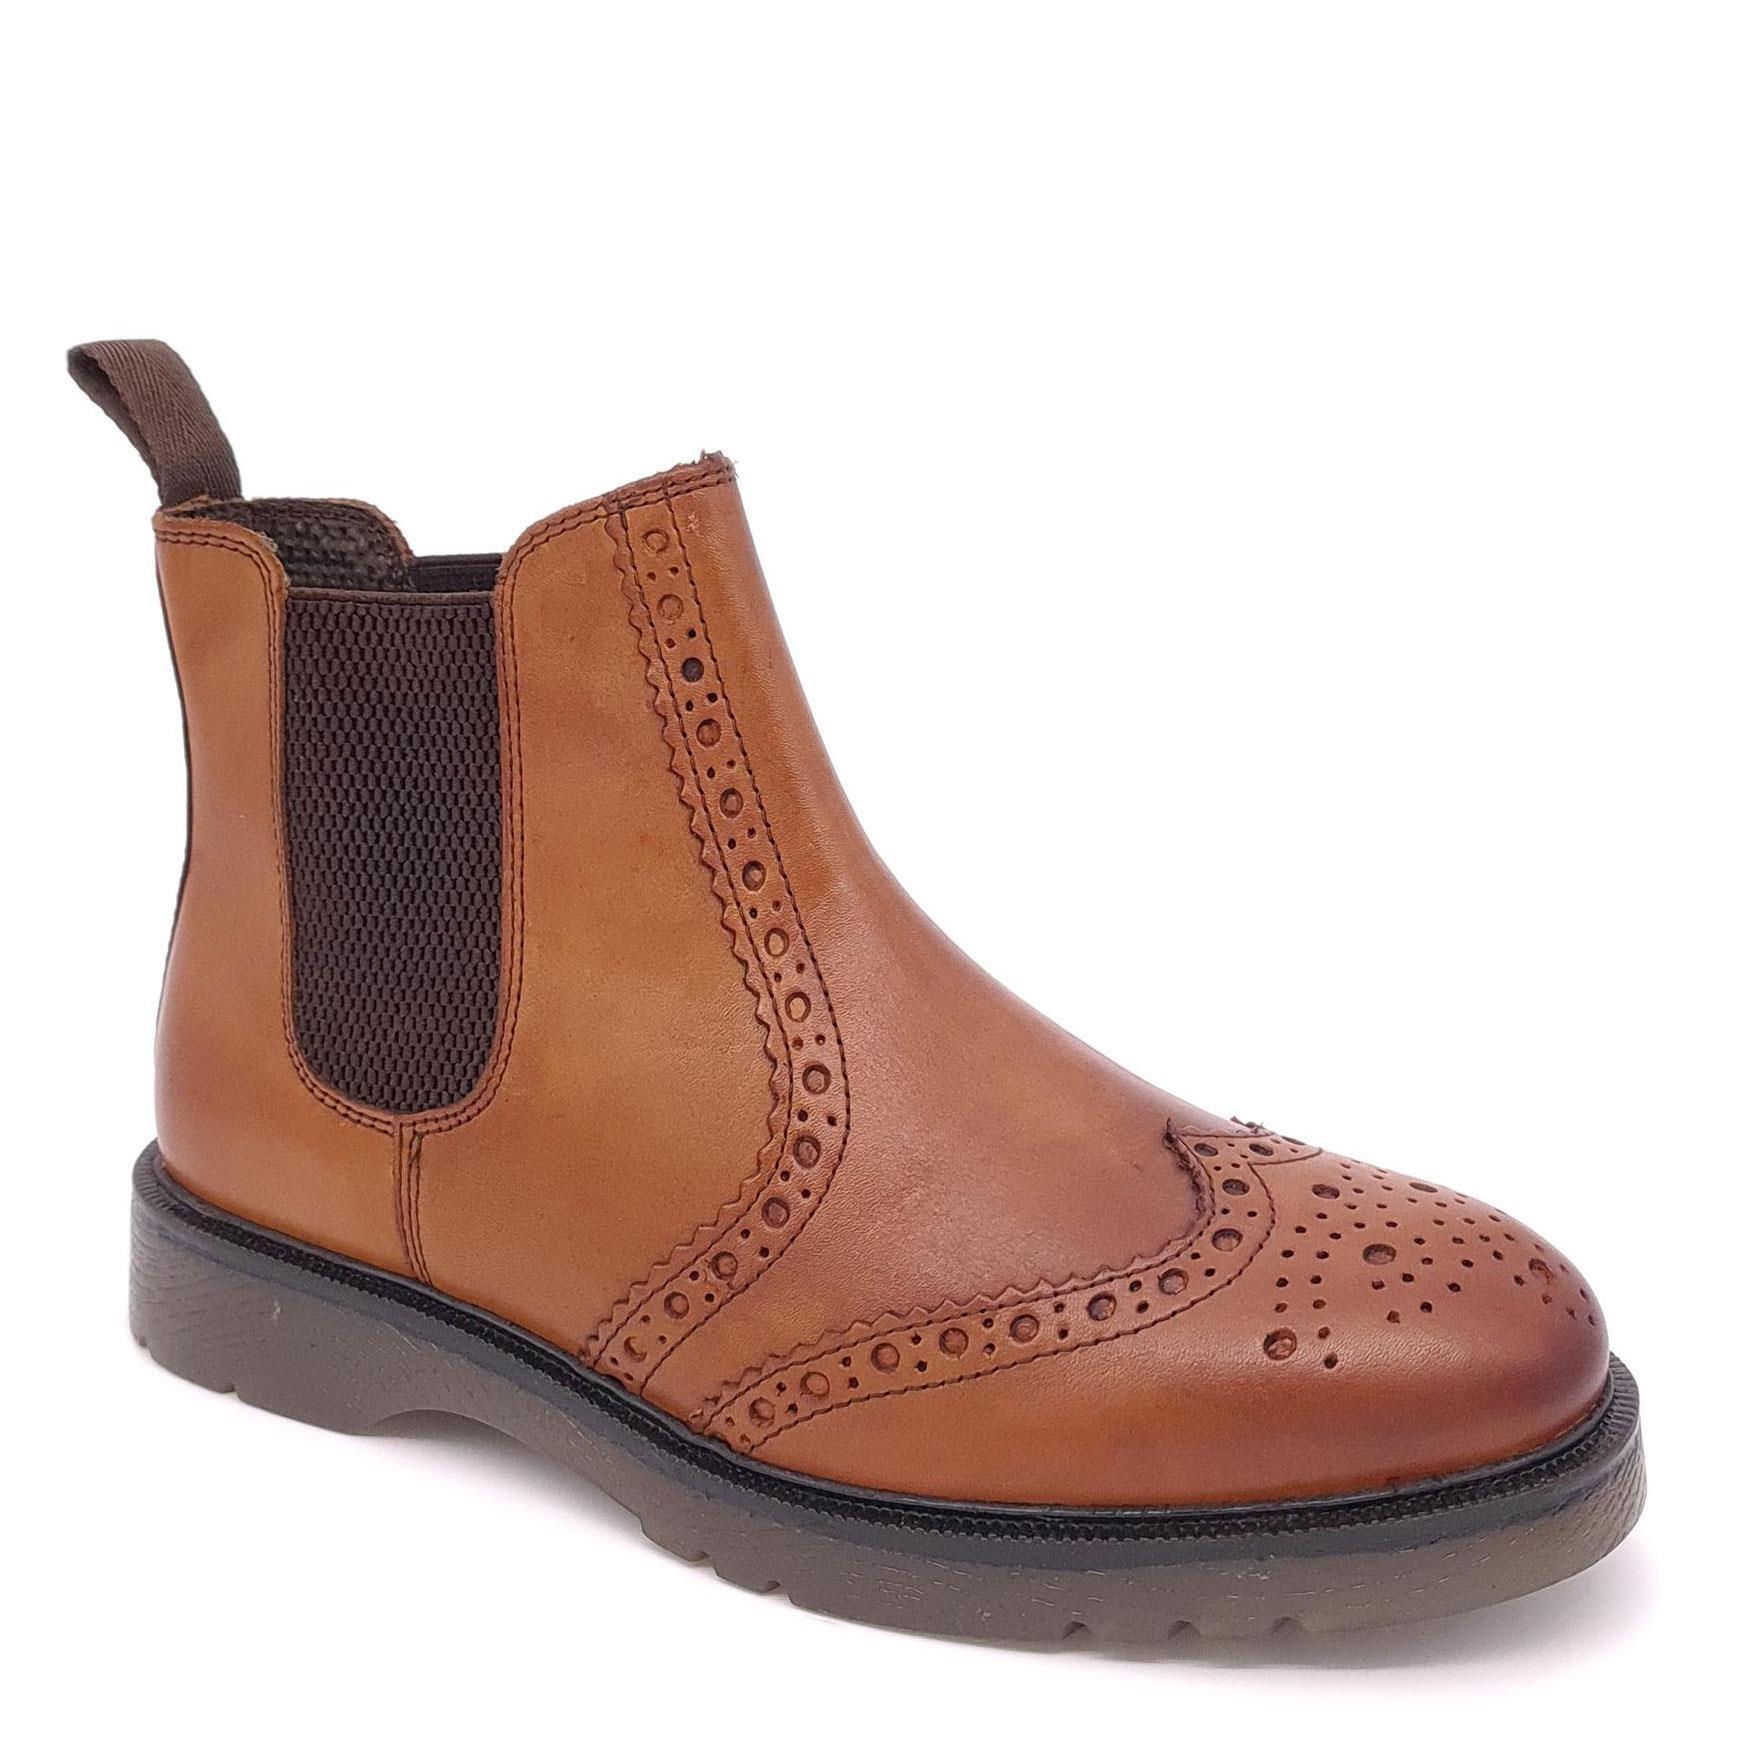 Кожаные ботинки челси с эффектом броги Warkton Frank James, коричневый кожаные ботинки челси с эффектом броги cheltenham frank james коричневый